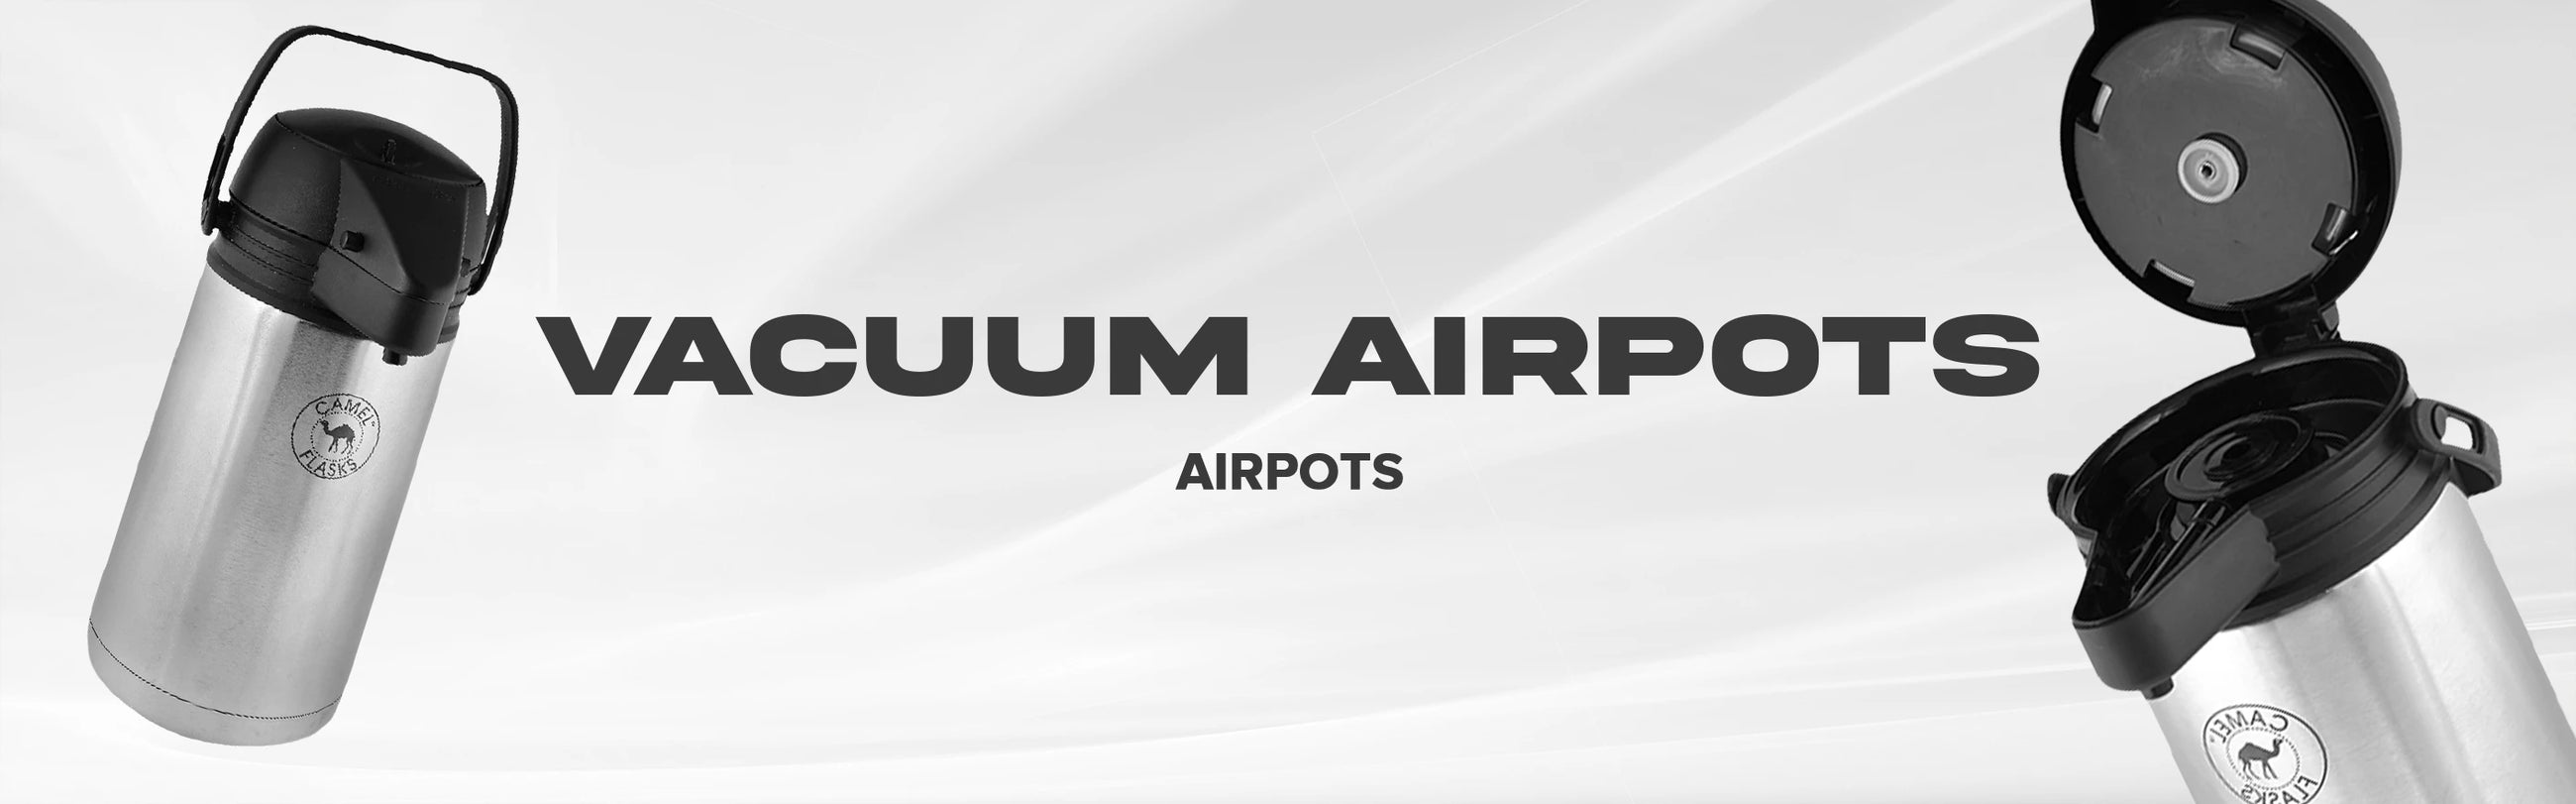 Vacuum Airpots